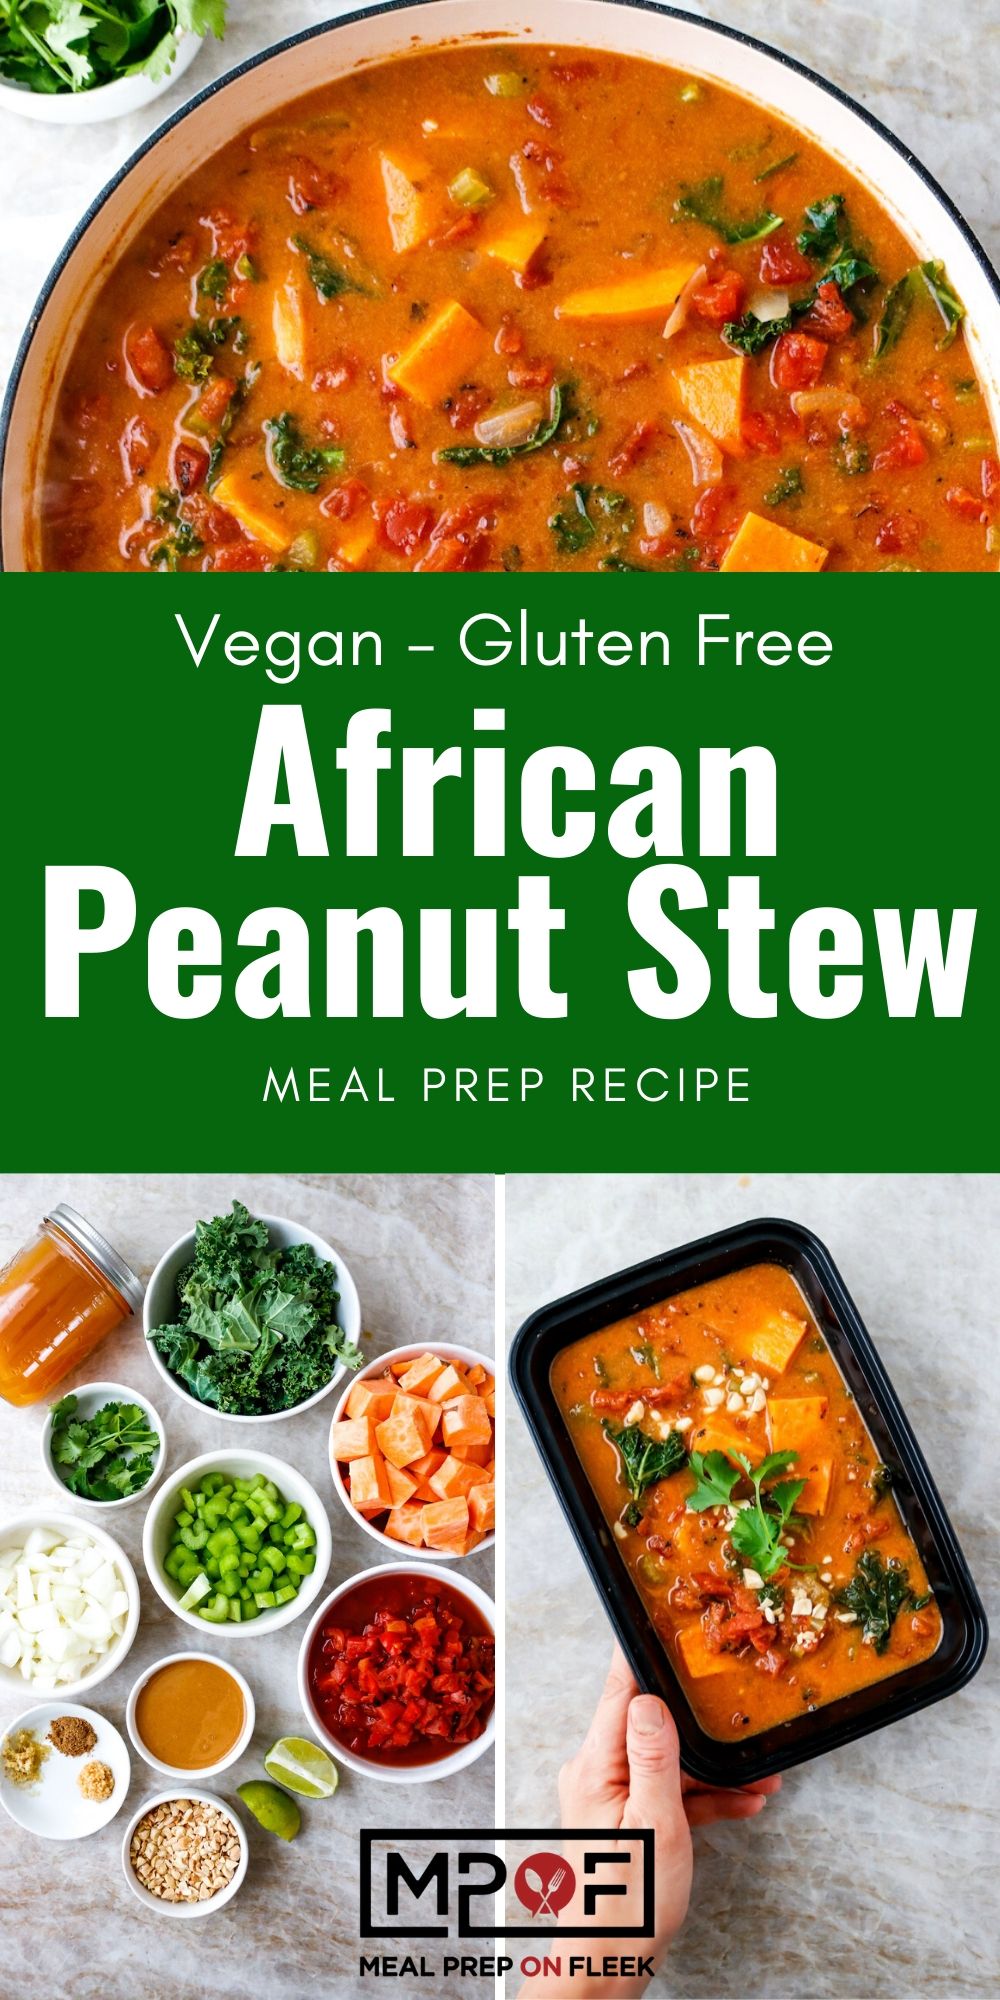 African Peanut Stew